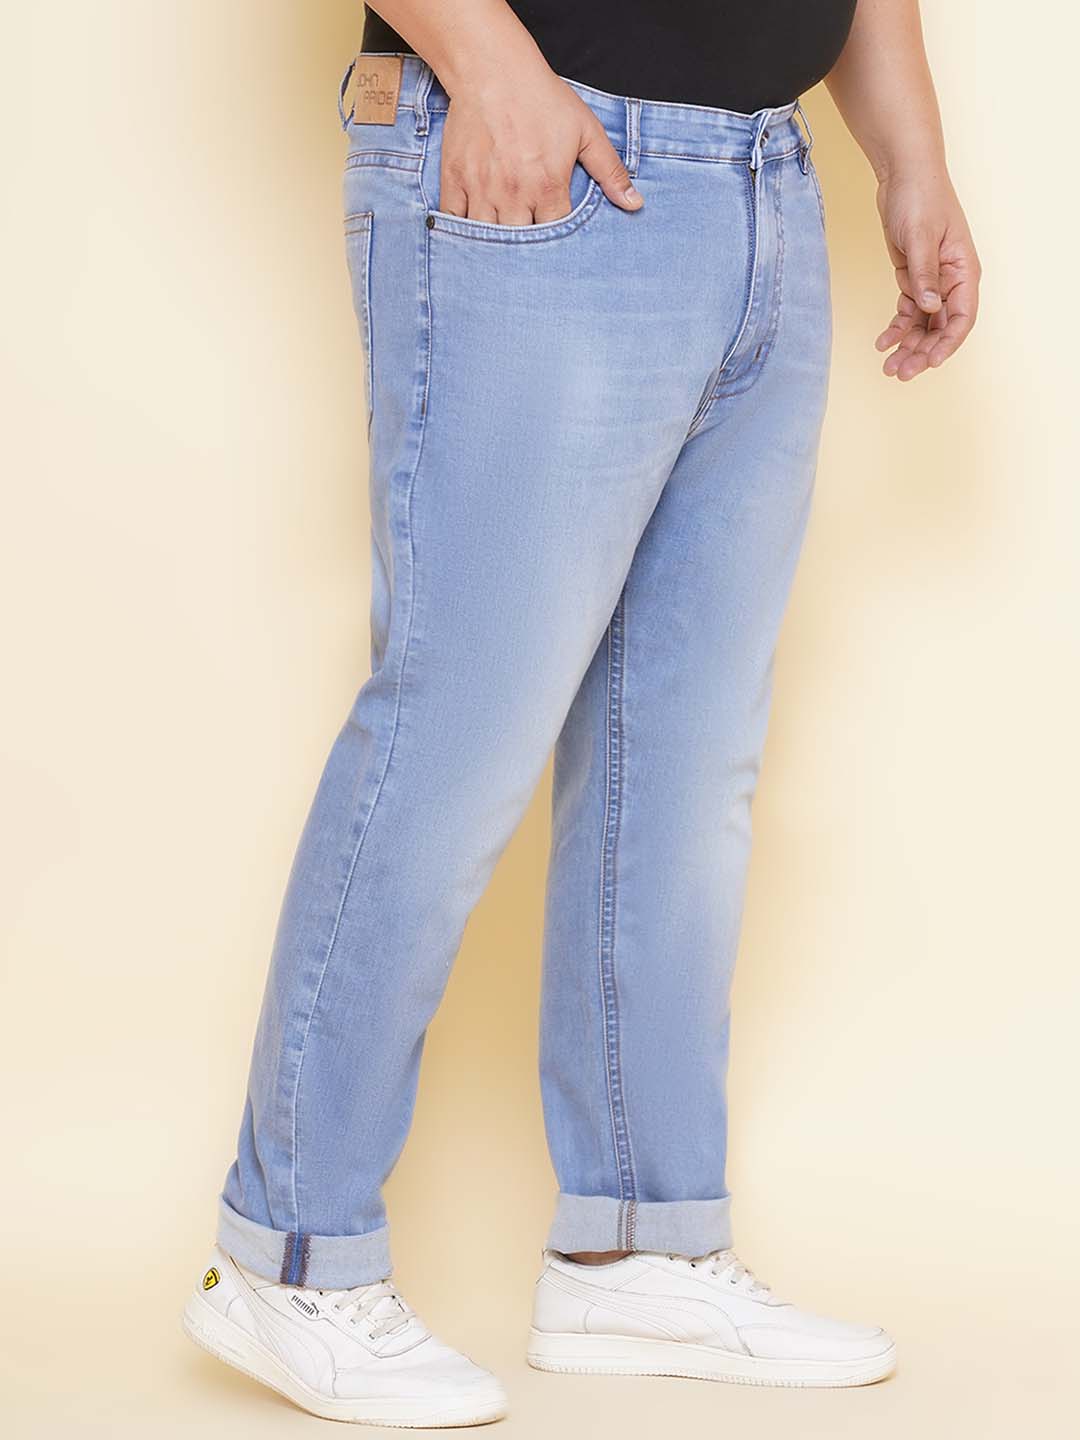 bottomwear/jeans/JPJ12407/jpj12407-3.jpg